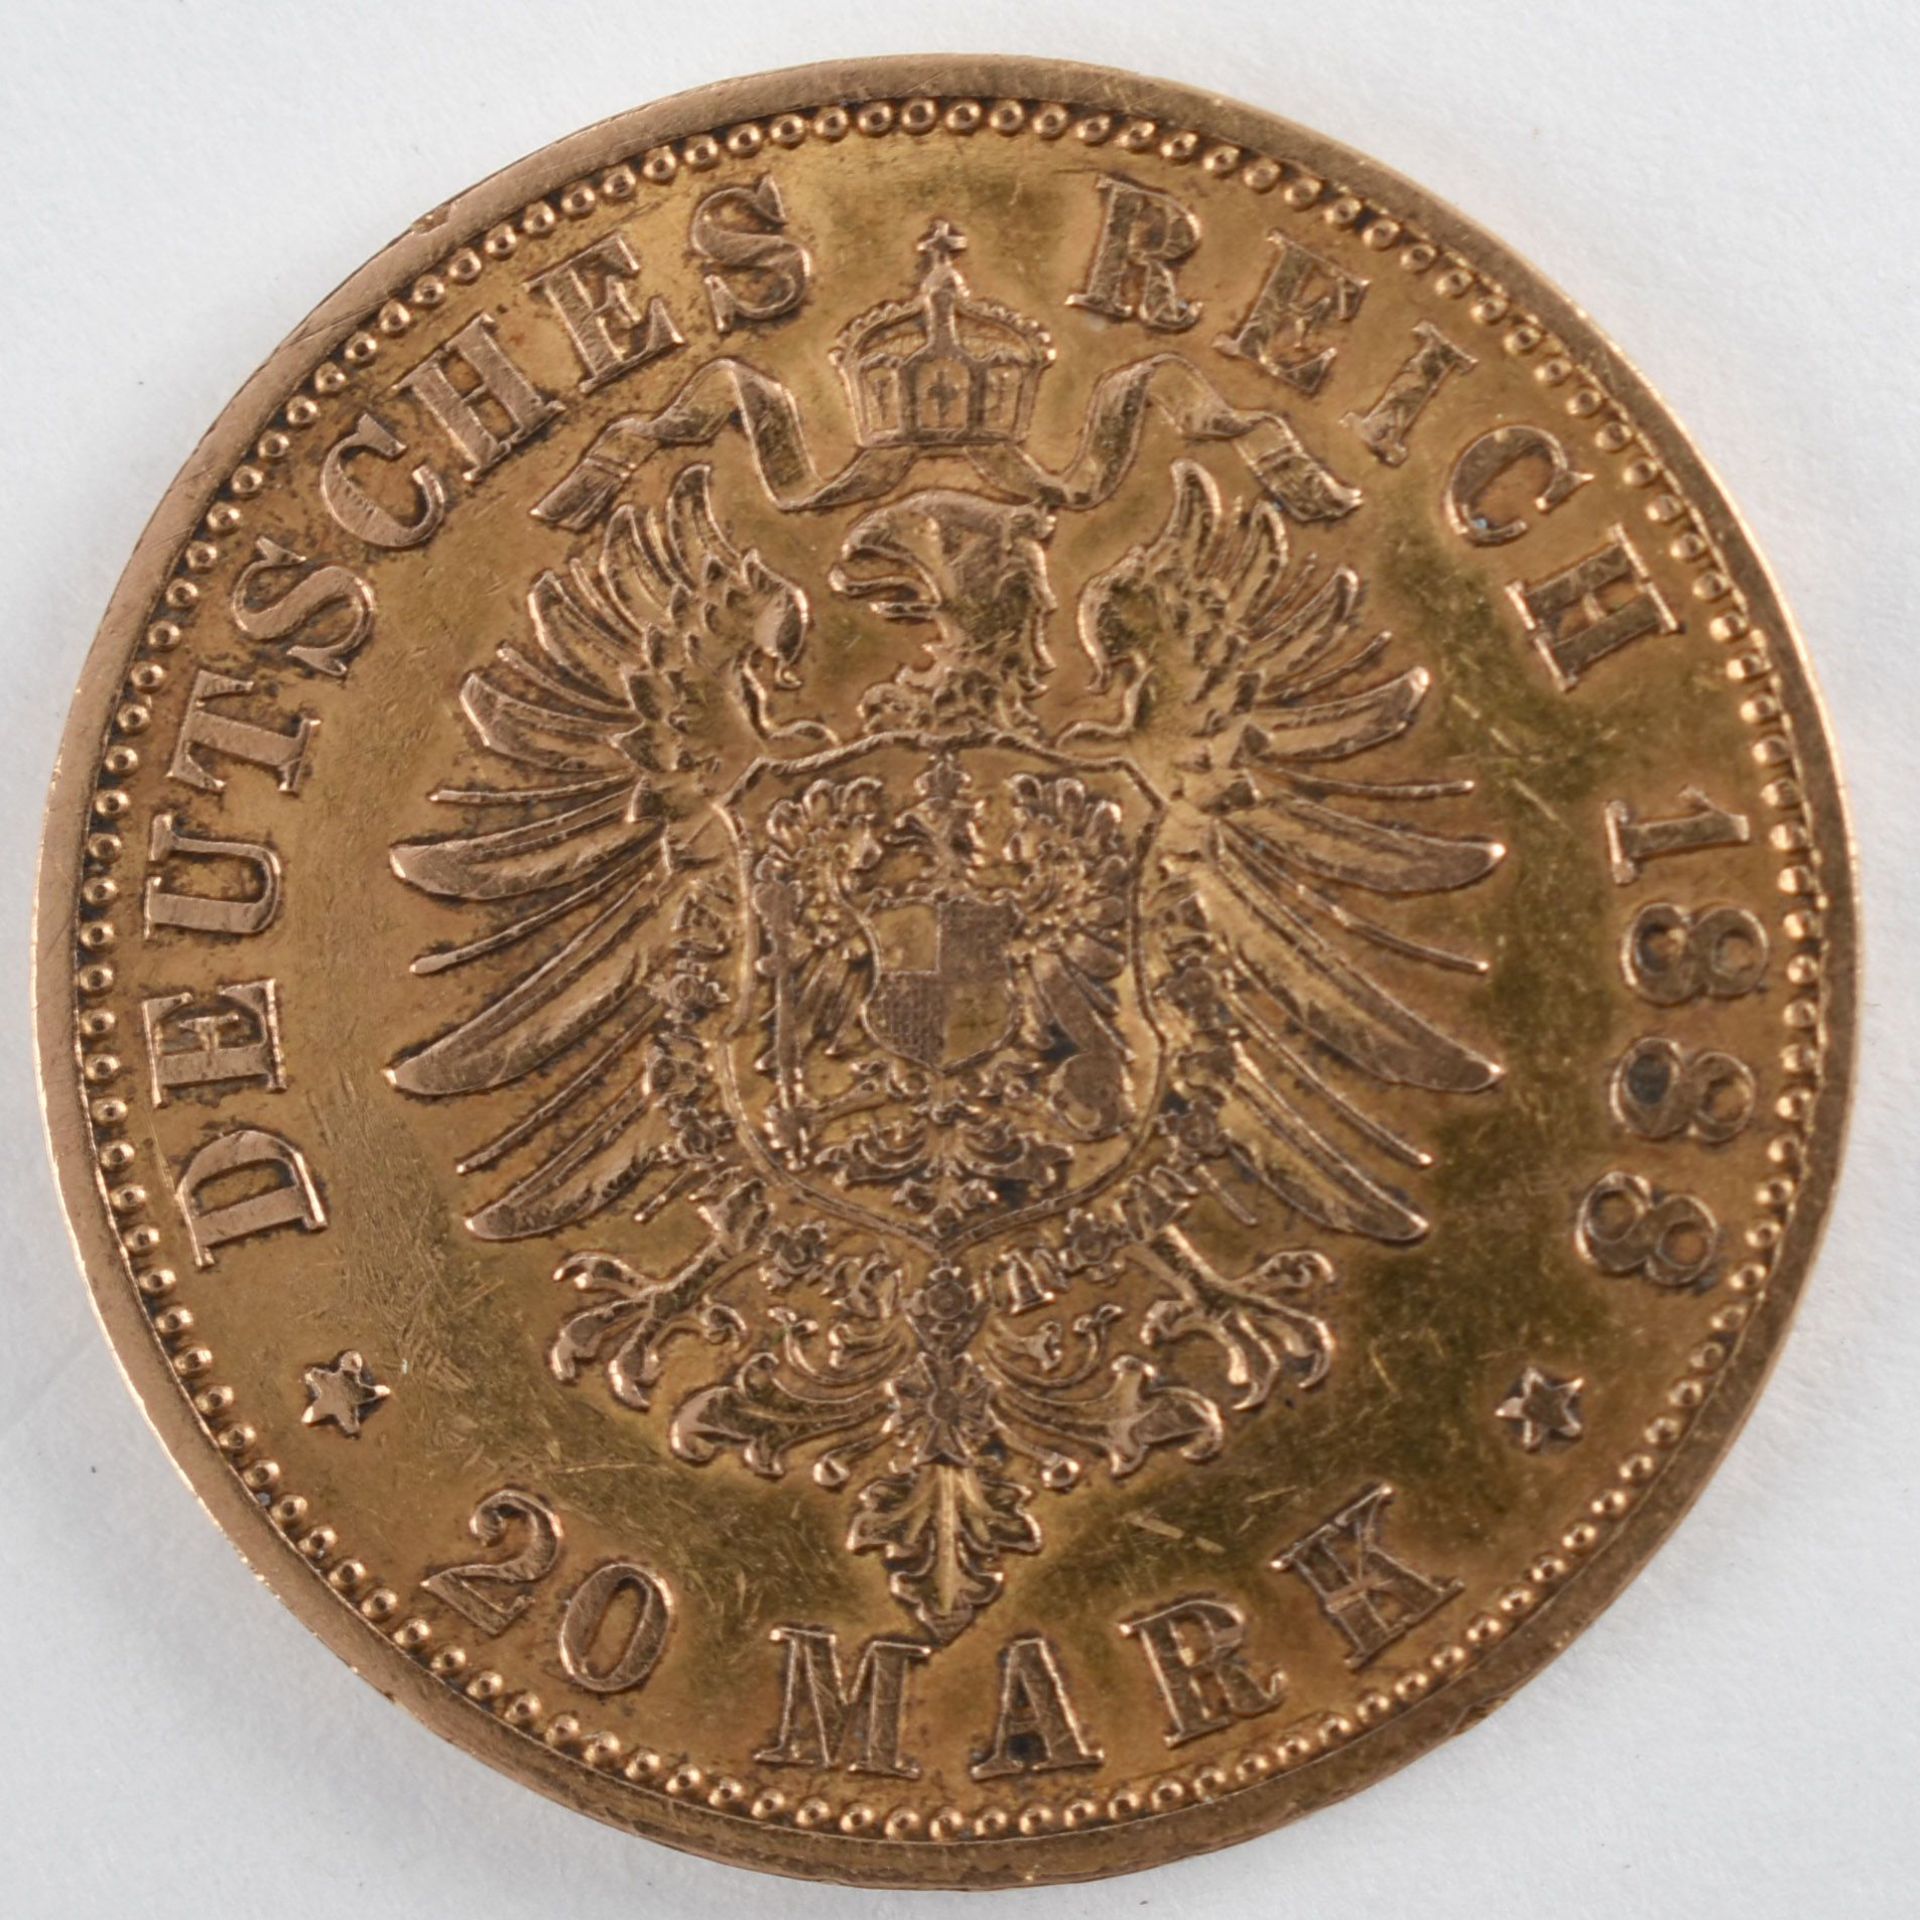 Goldmünze Preußen 1888 20 Mark in Gold, 900/1000, 7,96 g, D ca. 22,5 mm, av. Friedrich Deutscher - Bild 3 aus 3